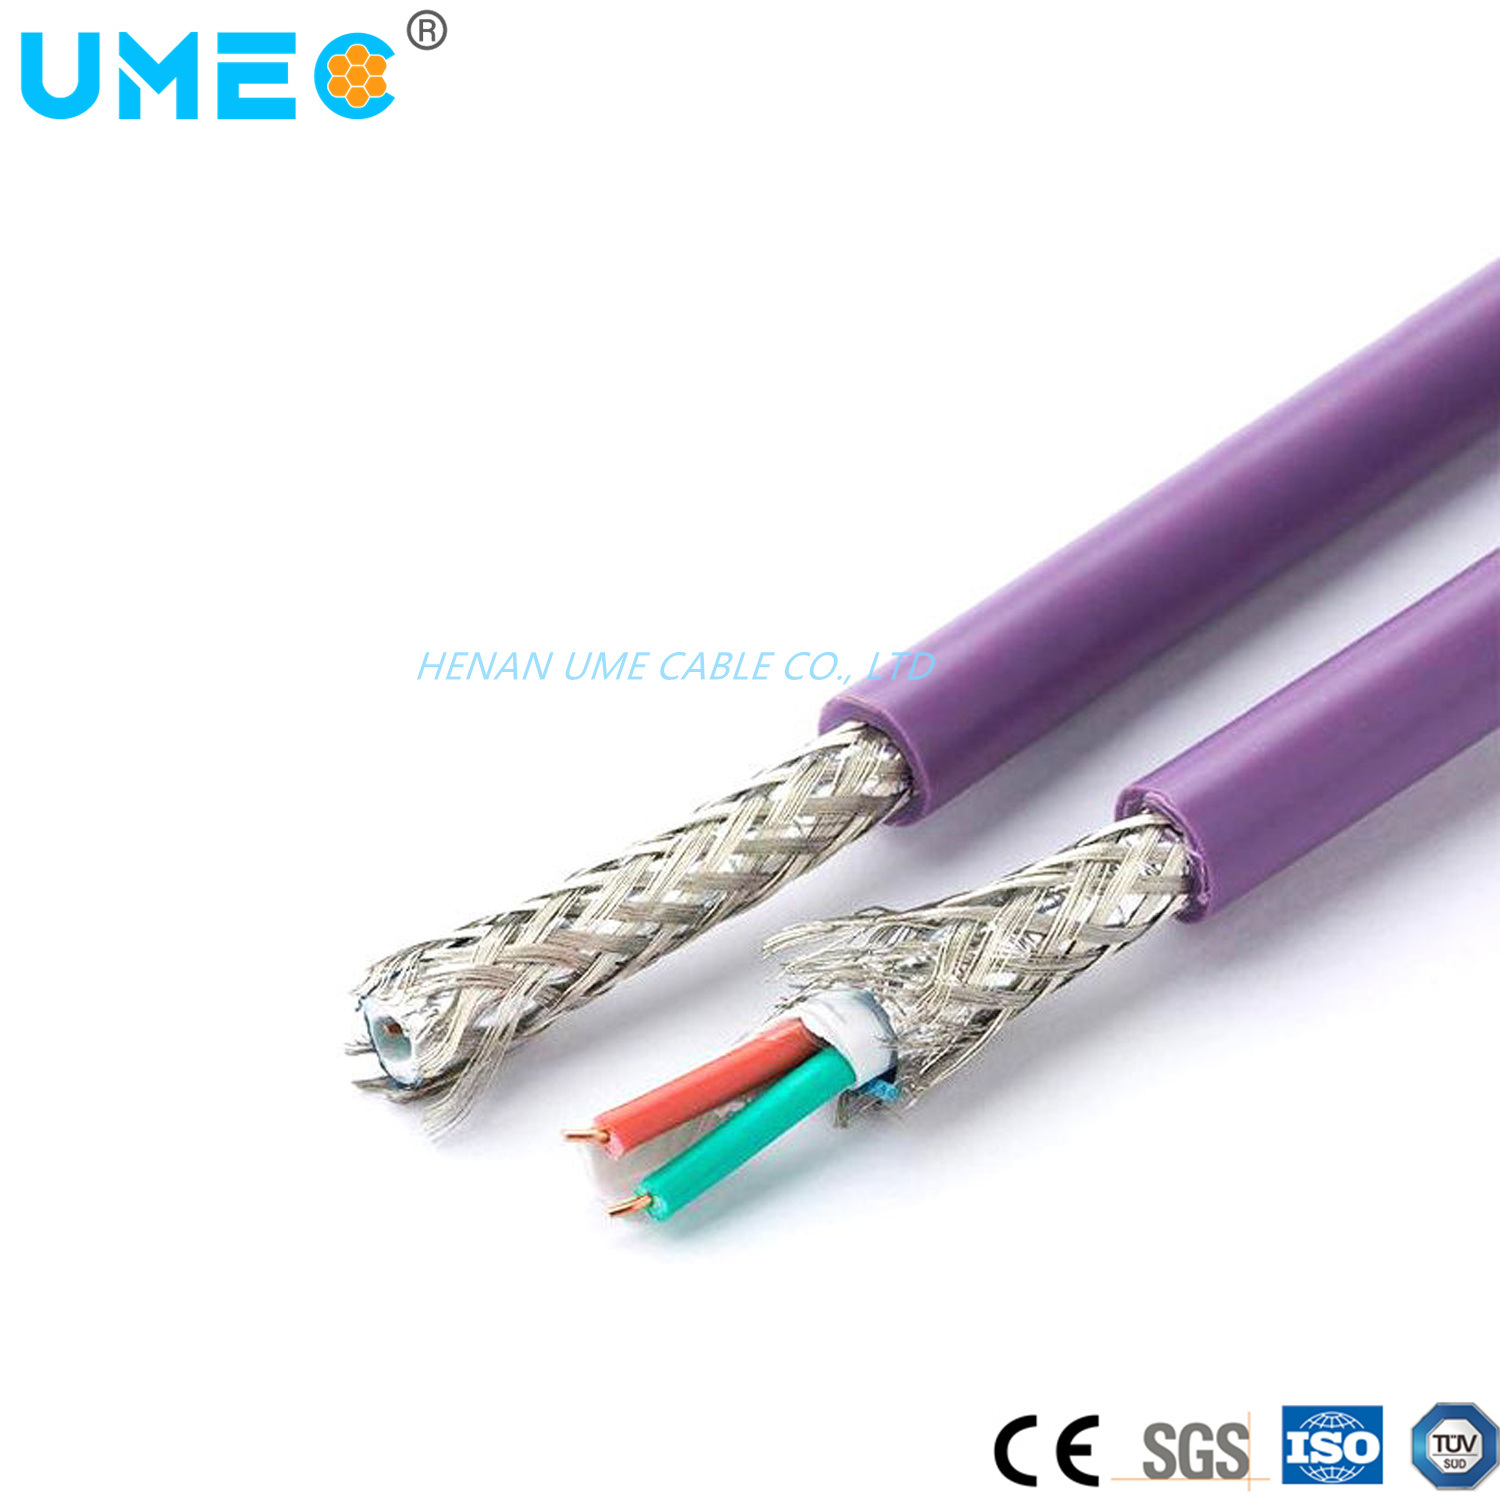 
                Витого медного кабеля гибкий кабель связи на местах Siemens 6xv1830-0eh10 кабель
            